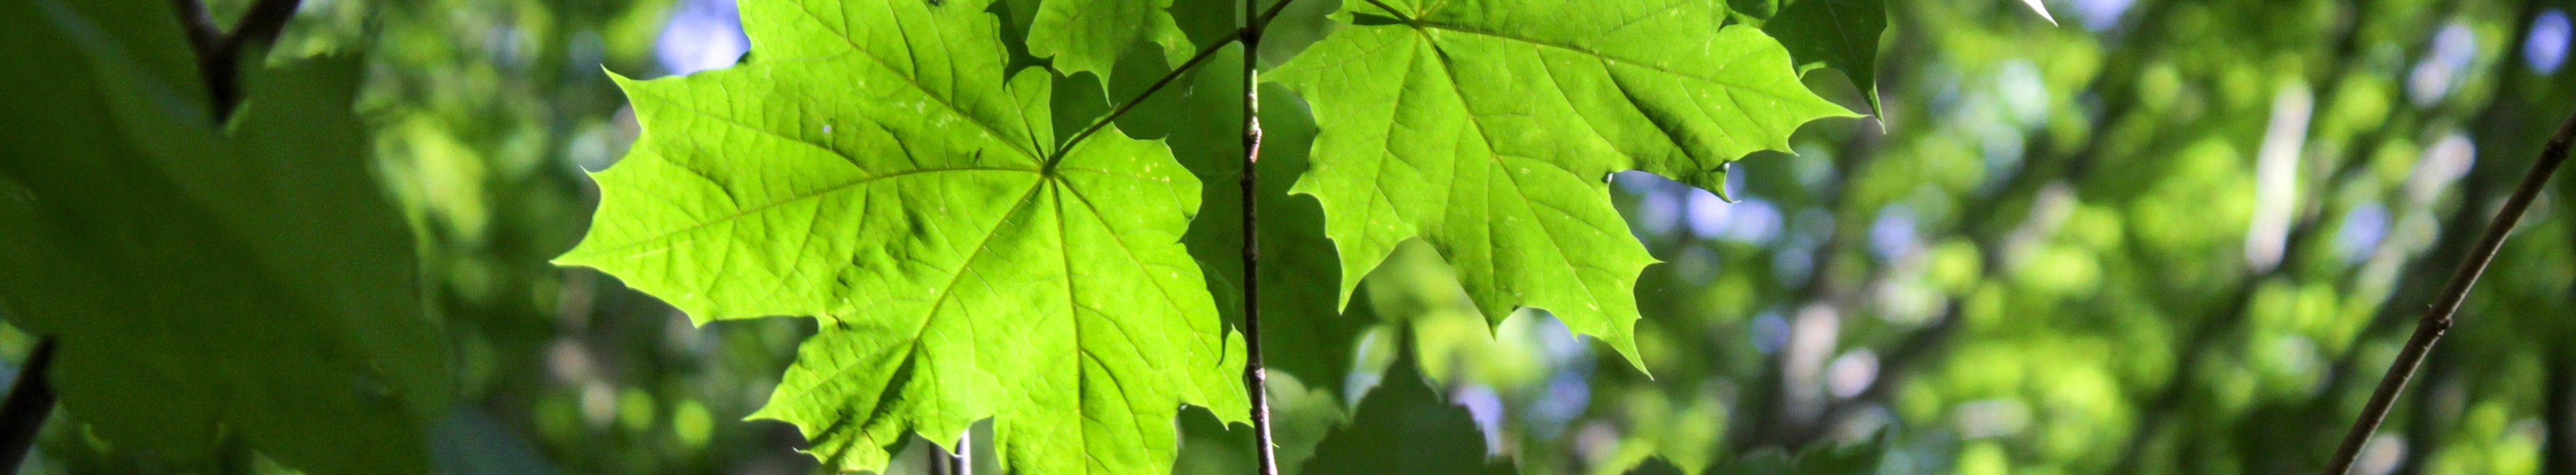 Zweig eines Sptizahorns im Gegenlicht mit leuchtend grünen Blättern